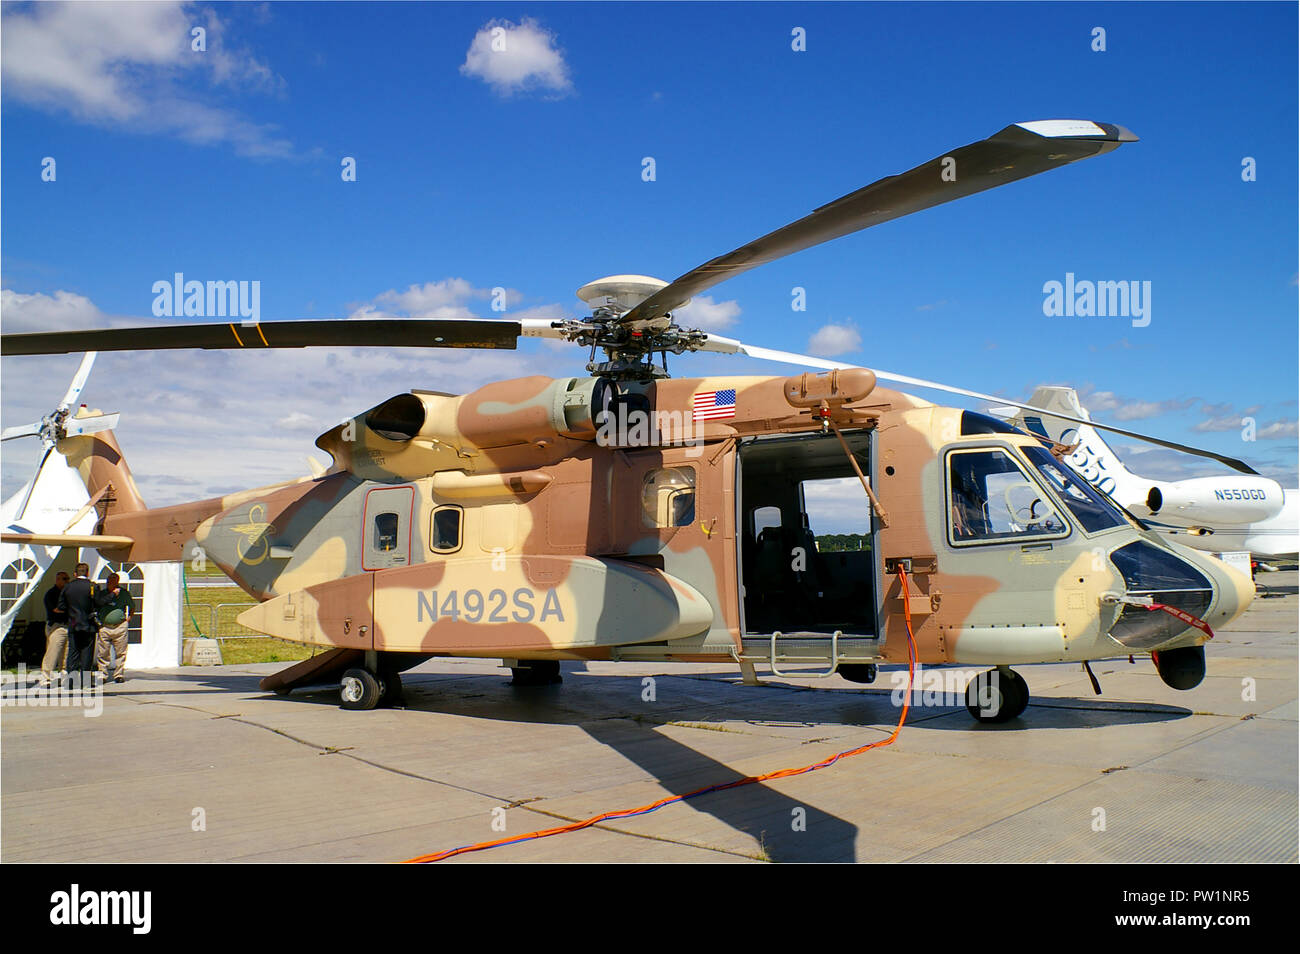 Sikorsky S-92 Hubschrauber Seriennummer 92-0004 Register N 492 SA durch Sikorsky Hubschrauber eingesetzt. Prototyp test Flugzeug in Farnborough International Airshow Stockfoto